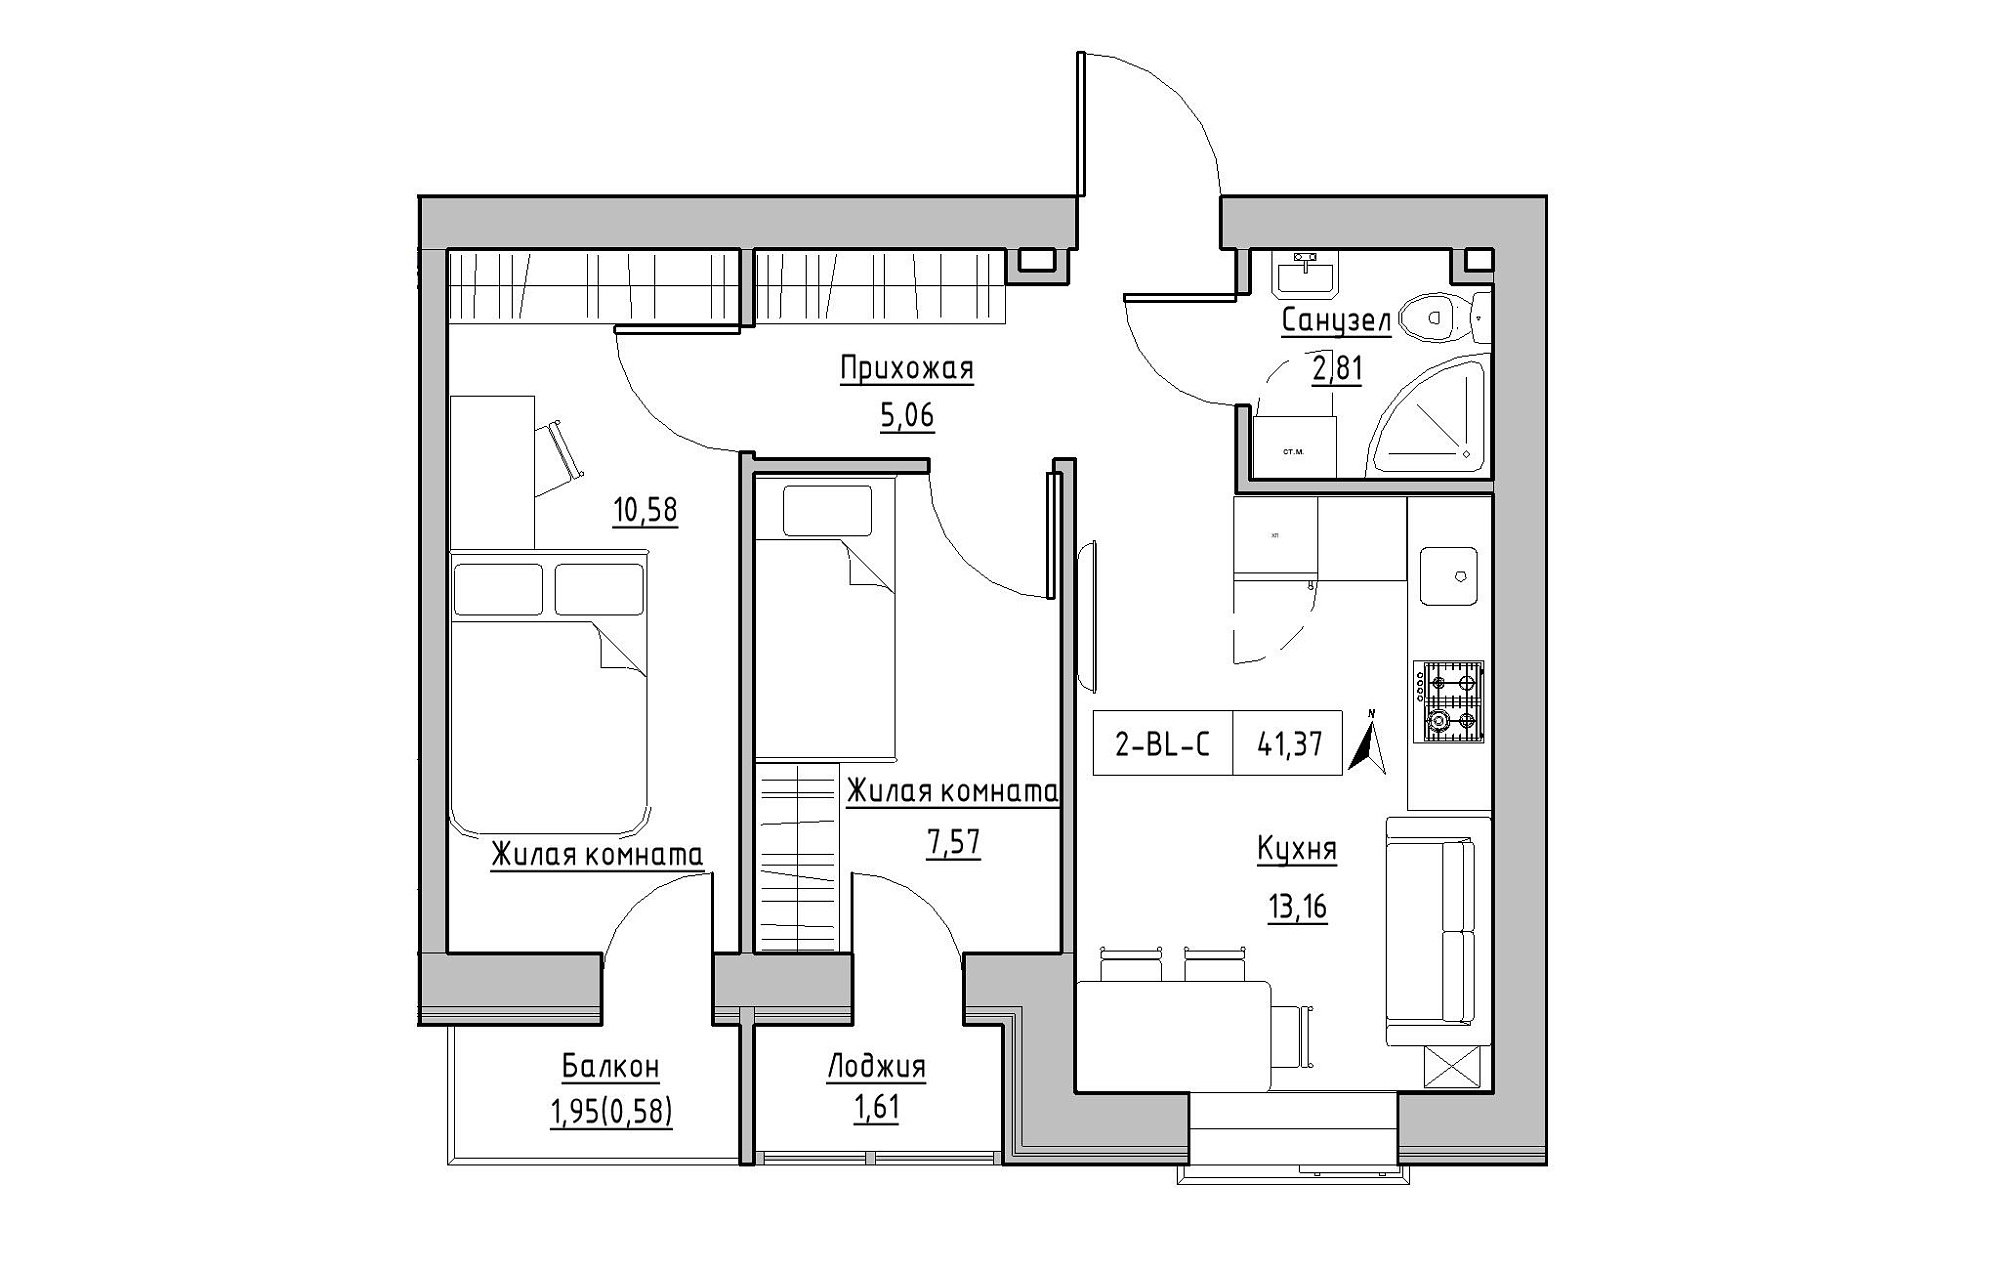 Планировка 2-к квартира площей 41.37м2, KS-019-03/0011.